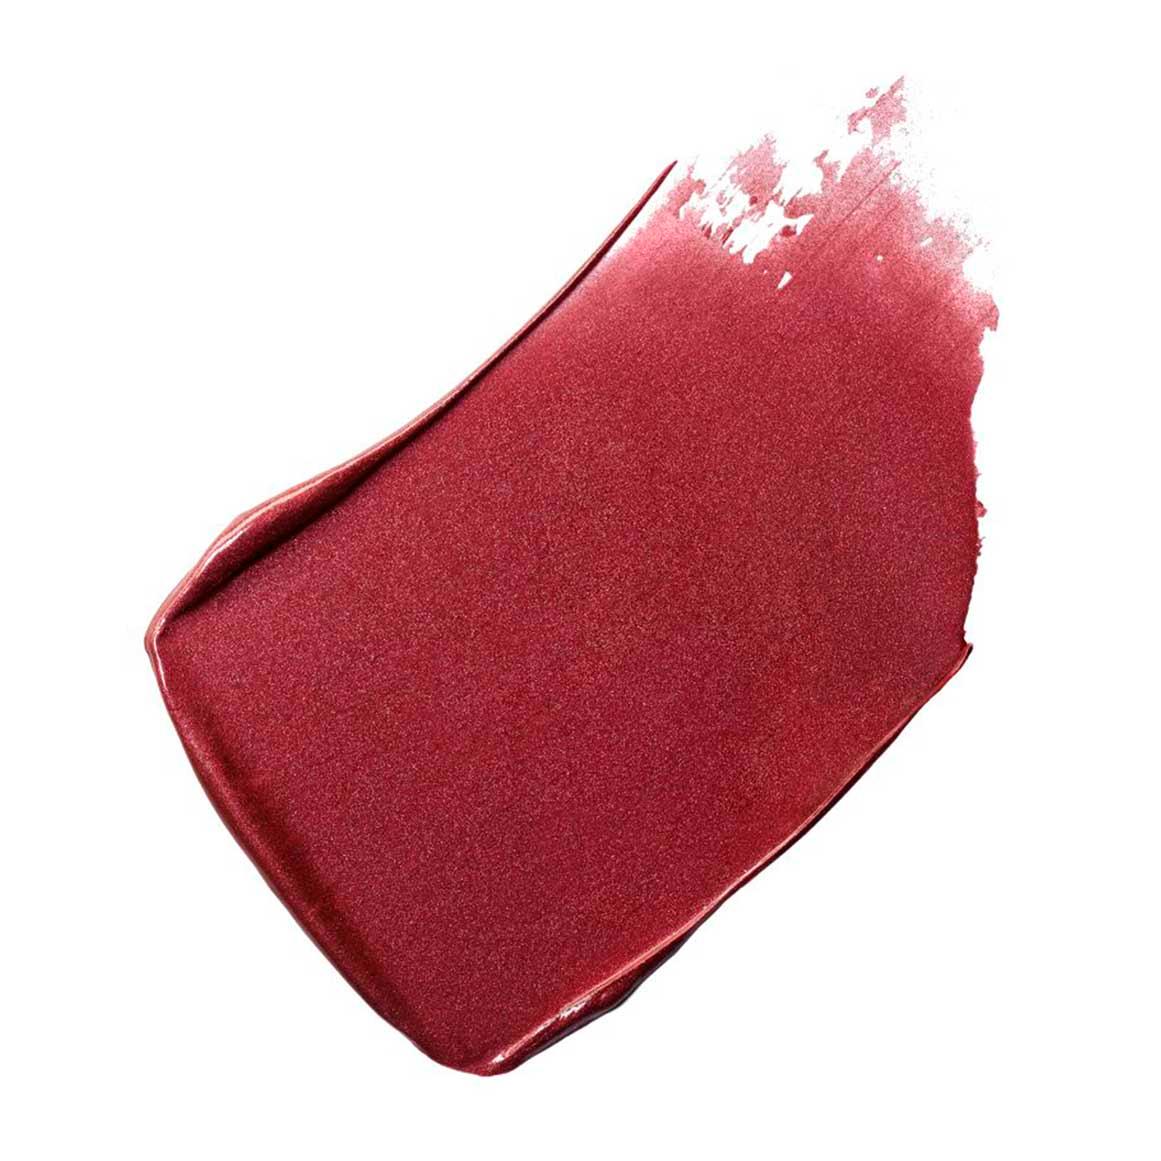 CHANEL Rouge Allure Laque Ultrawear Shine Liquid Lip Colour, 75